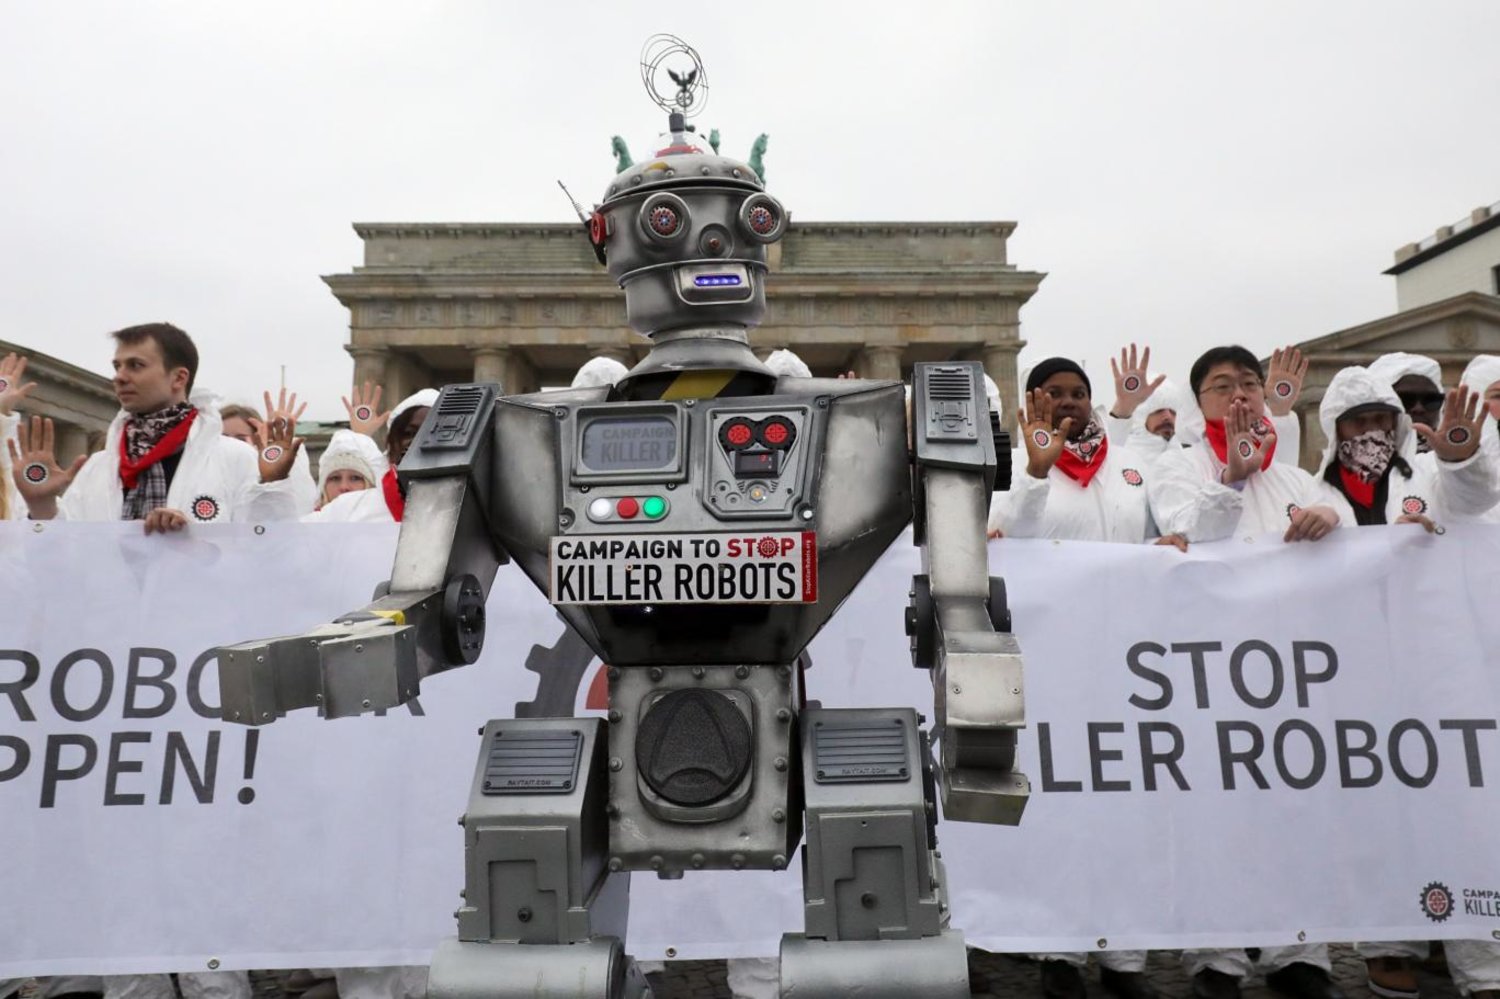 Alman sivil toplum kuruluşu "Facing Finance"in katil robotlar diye adlandırdıkları robotları yasaklama çağrısı yaptığı "Katil Robotları Durdurun" kampanyası kapsamında düzenlenen gösteriye katılanlar (AFP)

